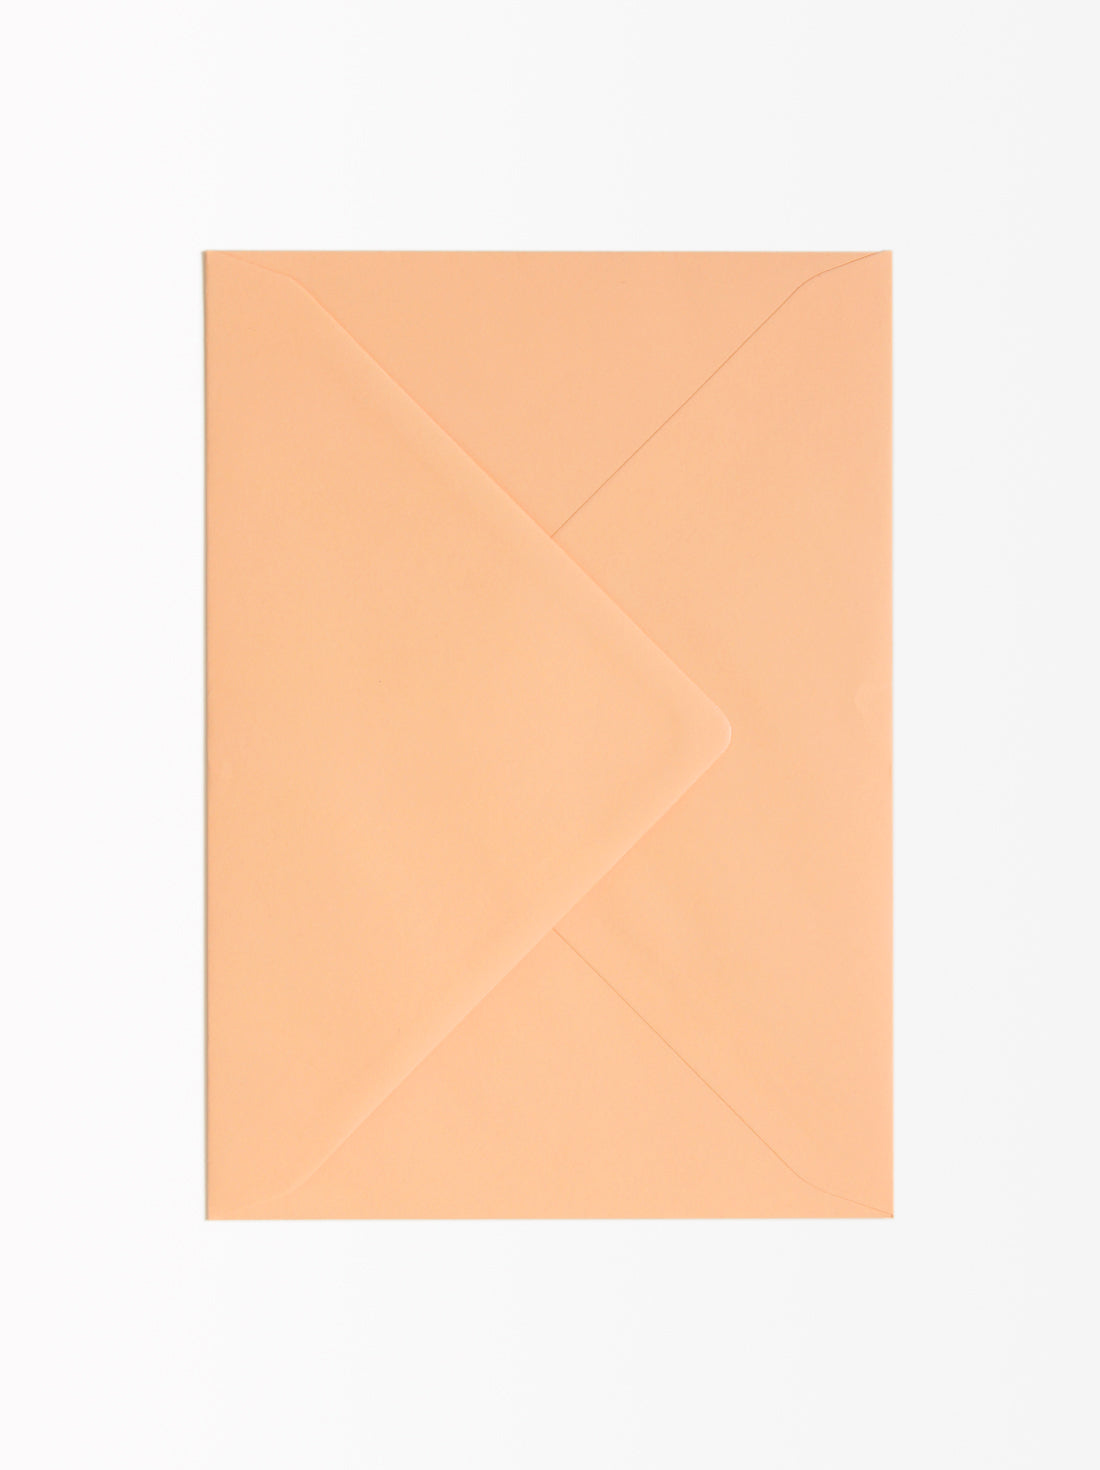 Envelope Apricot 